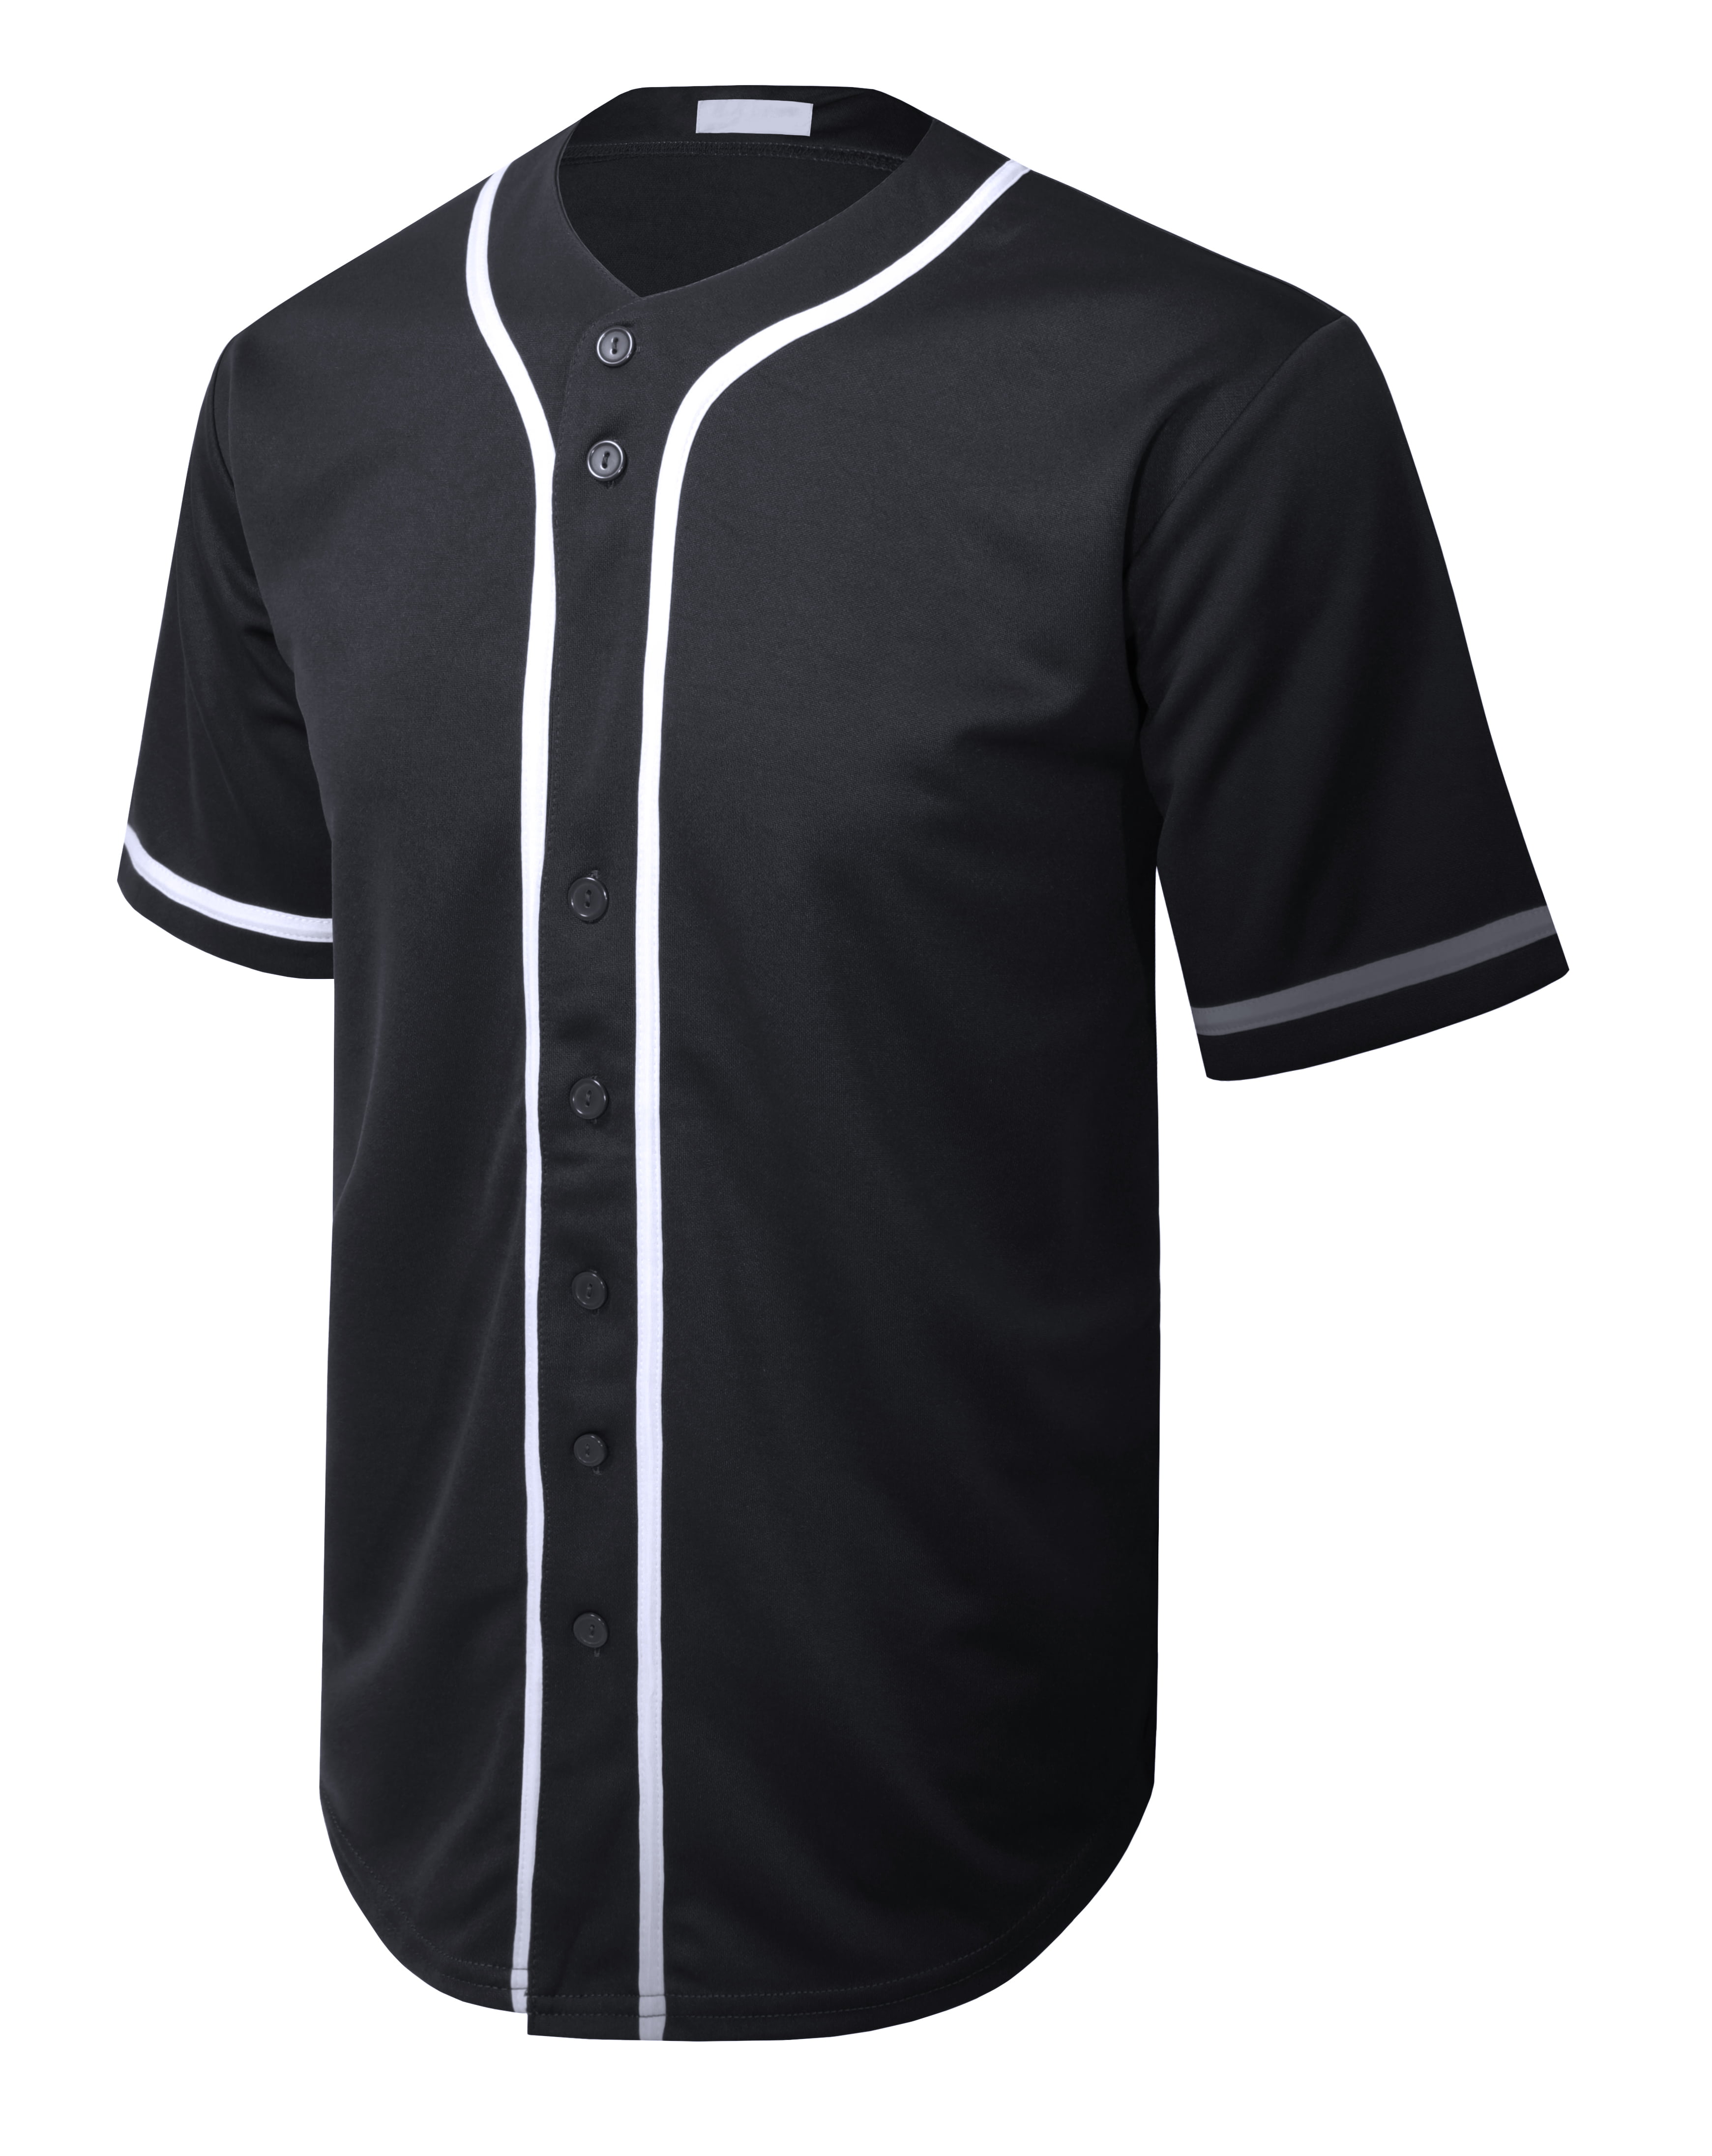 Allsense Men's Basic Sport Outline Baseball Jersey Classic Short Sleeve  Shirt White 3XL